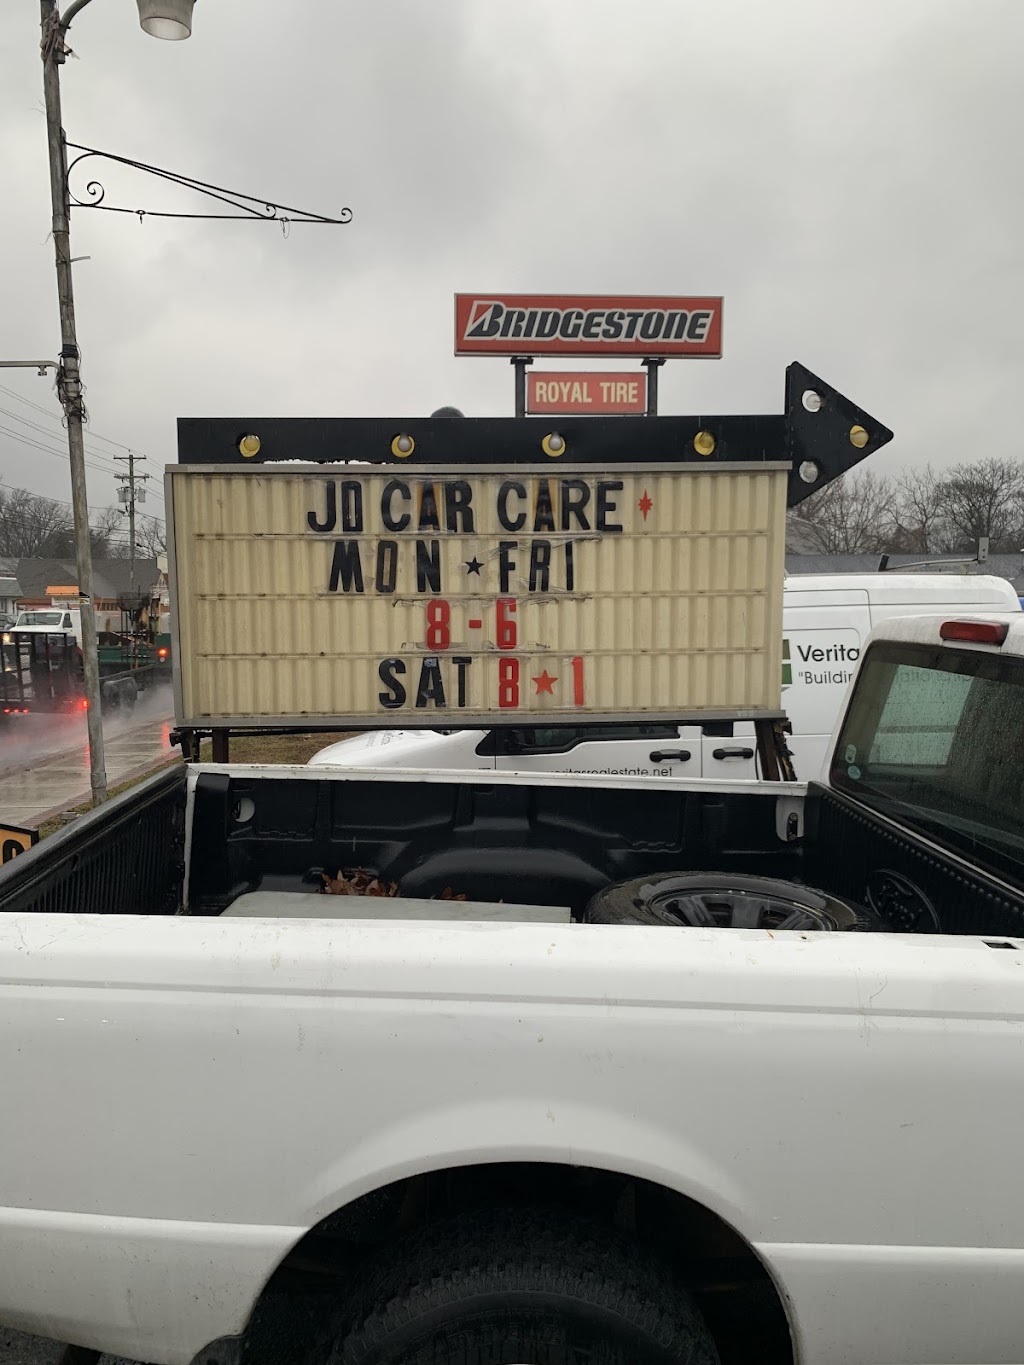 JD Car Care | 301 N White Horse Pike, Magnolia, NJ 08049 | Phone: (856) 344-2495